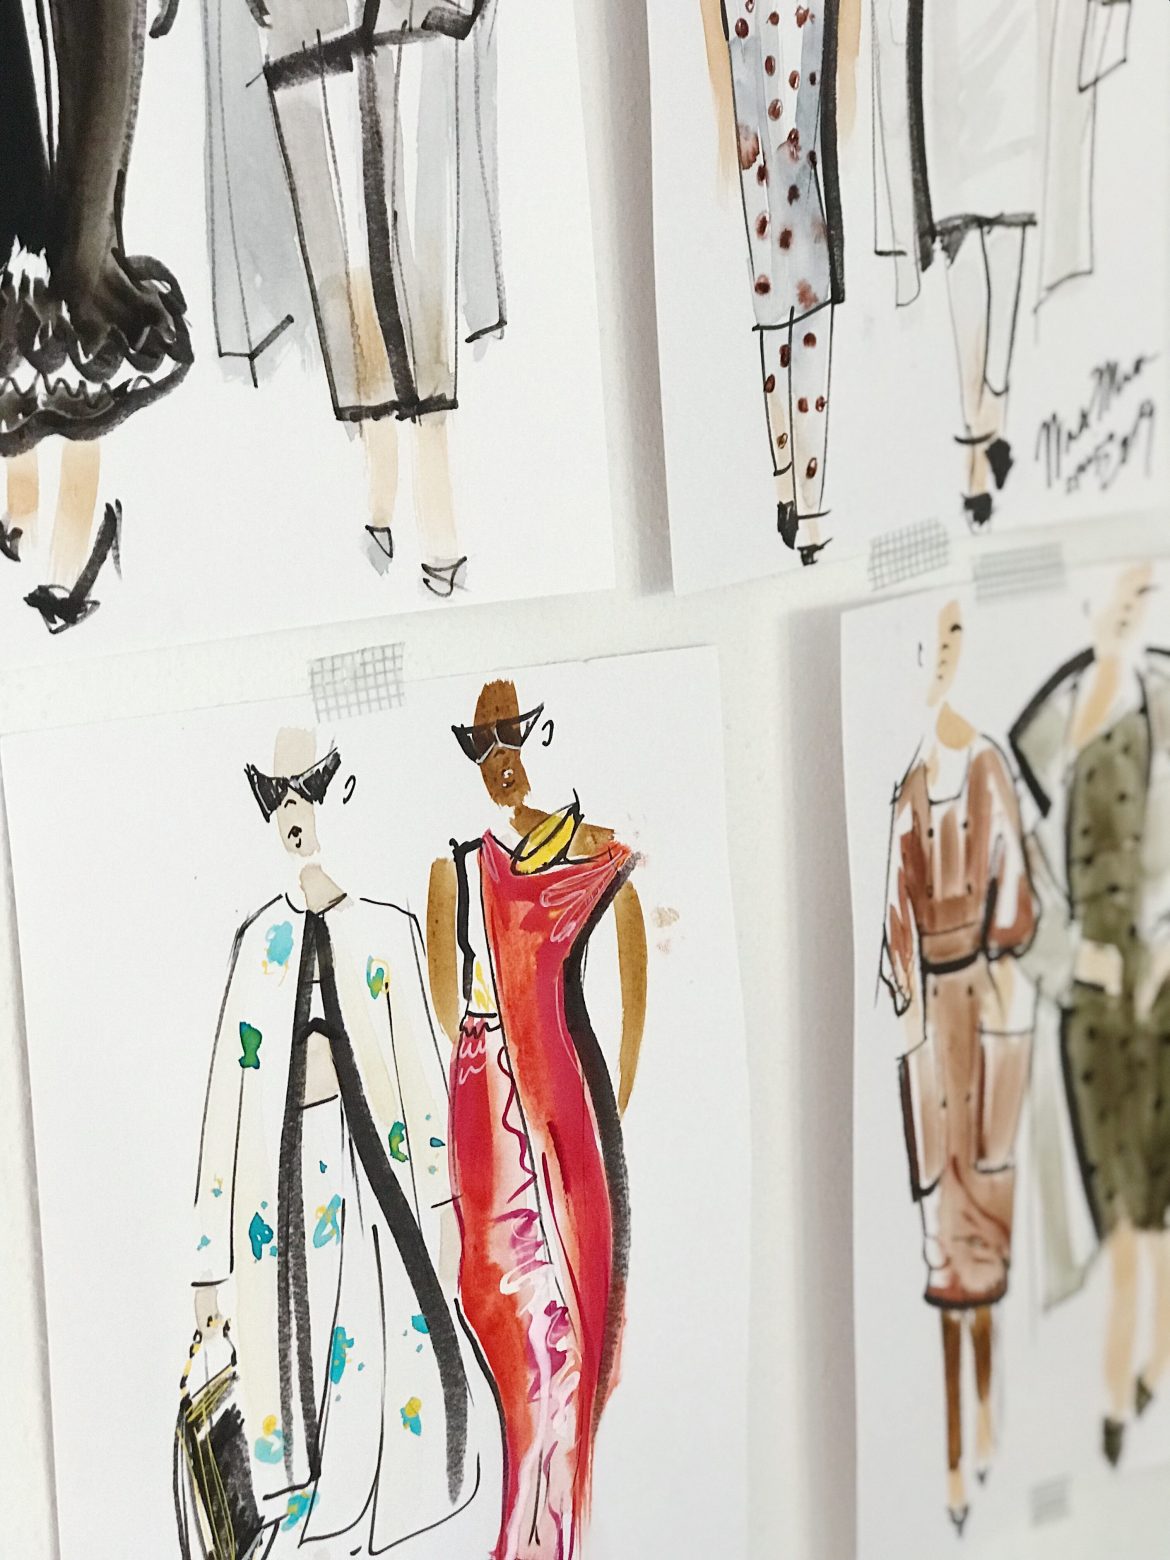 Colour, Contrast, Composition: Rick Owens’ Pret-a-Porter Femme SS24 Fashion Show Had it All